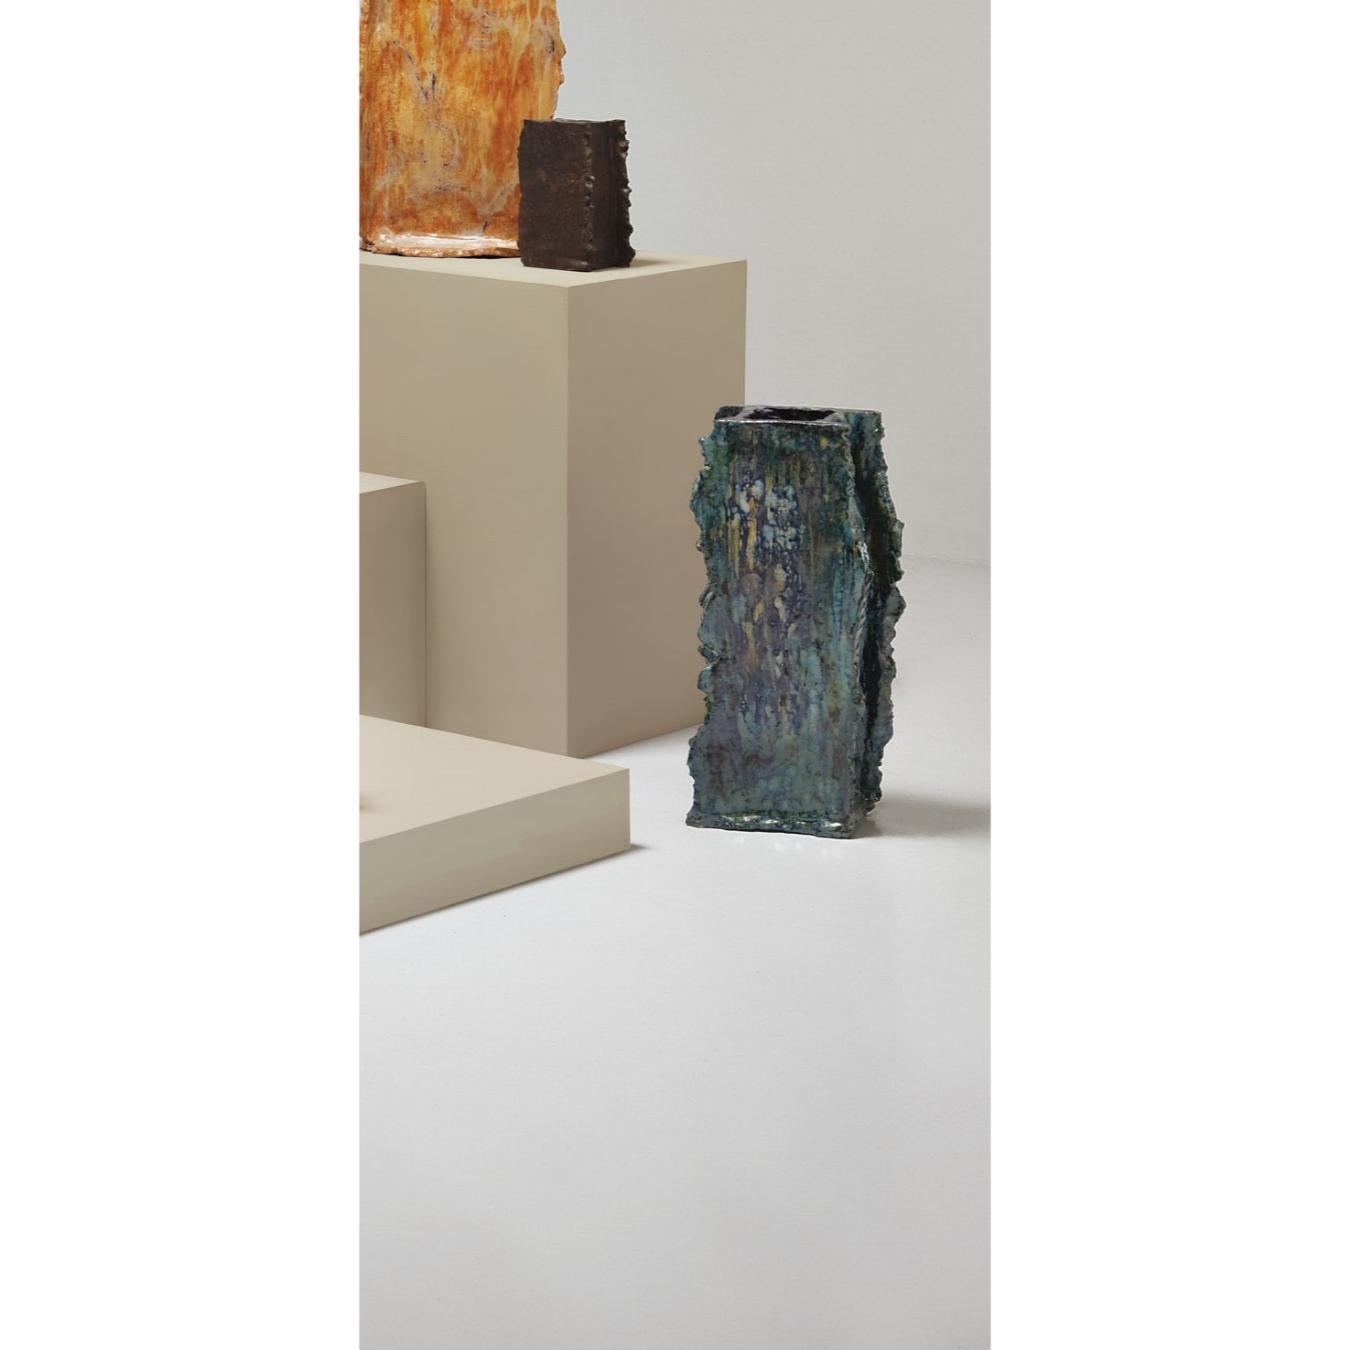 Table haute en céramique torsadée de Willem Van Hooff
Fait à la main
Dimensions : Large x H 20 cm (Les dimensions peuvent varier car les pièces sont fabriquées à la main et peuvent présenter de légères variations de taille)
MATERIAL :